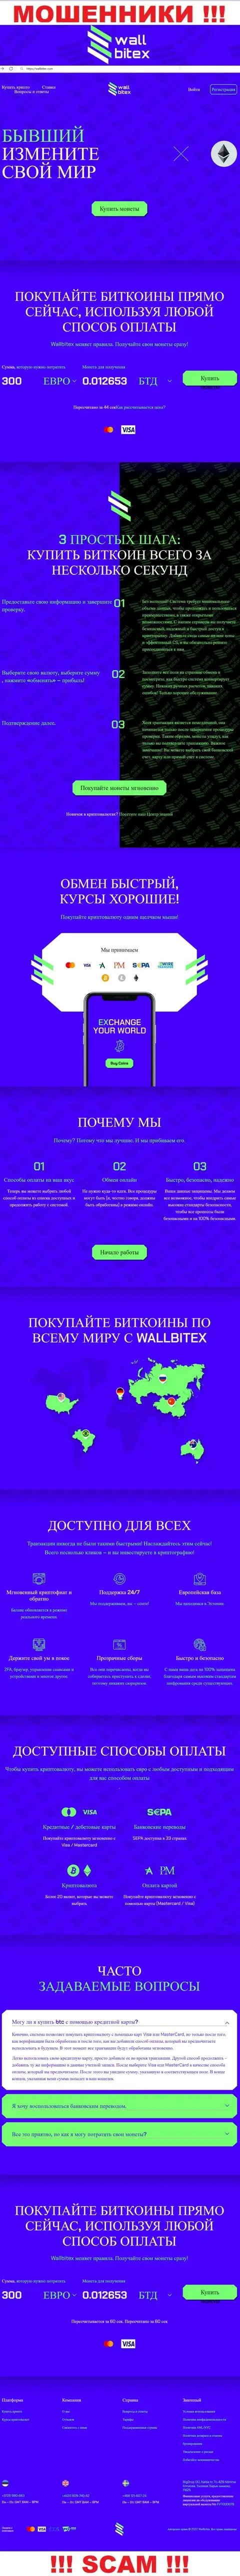 WallBitex Com - это официальный сайт жульнической конторы WallBitex